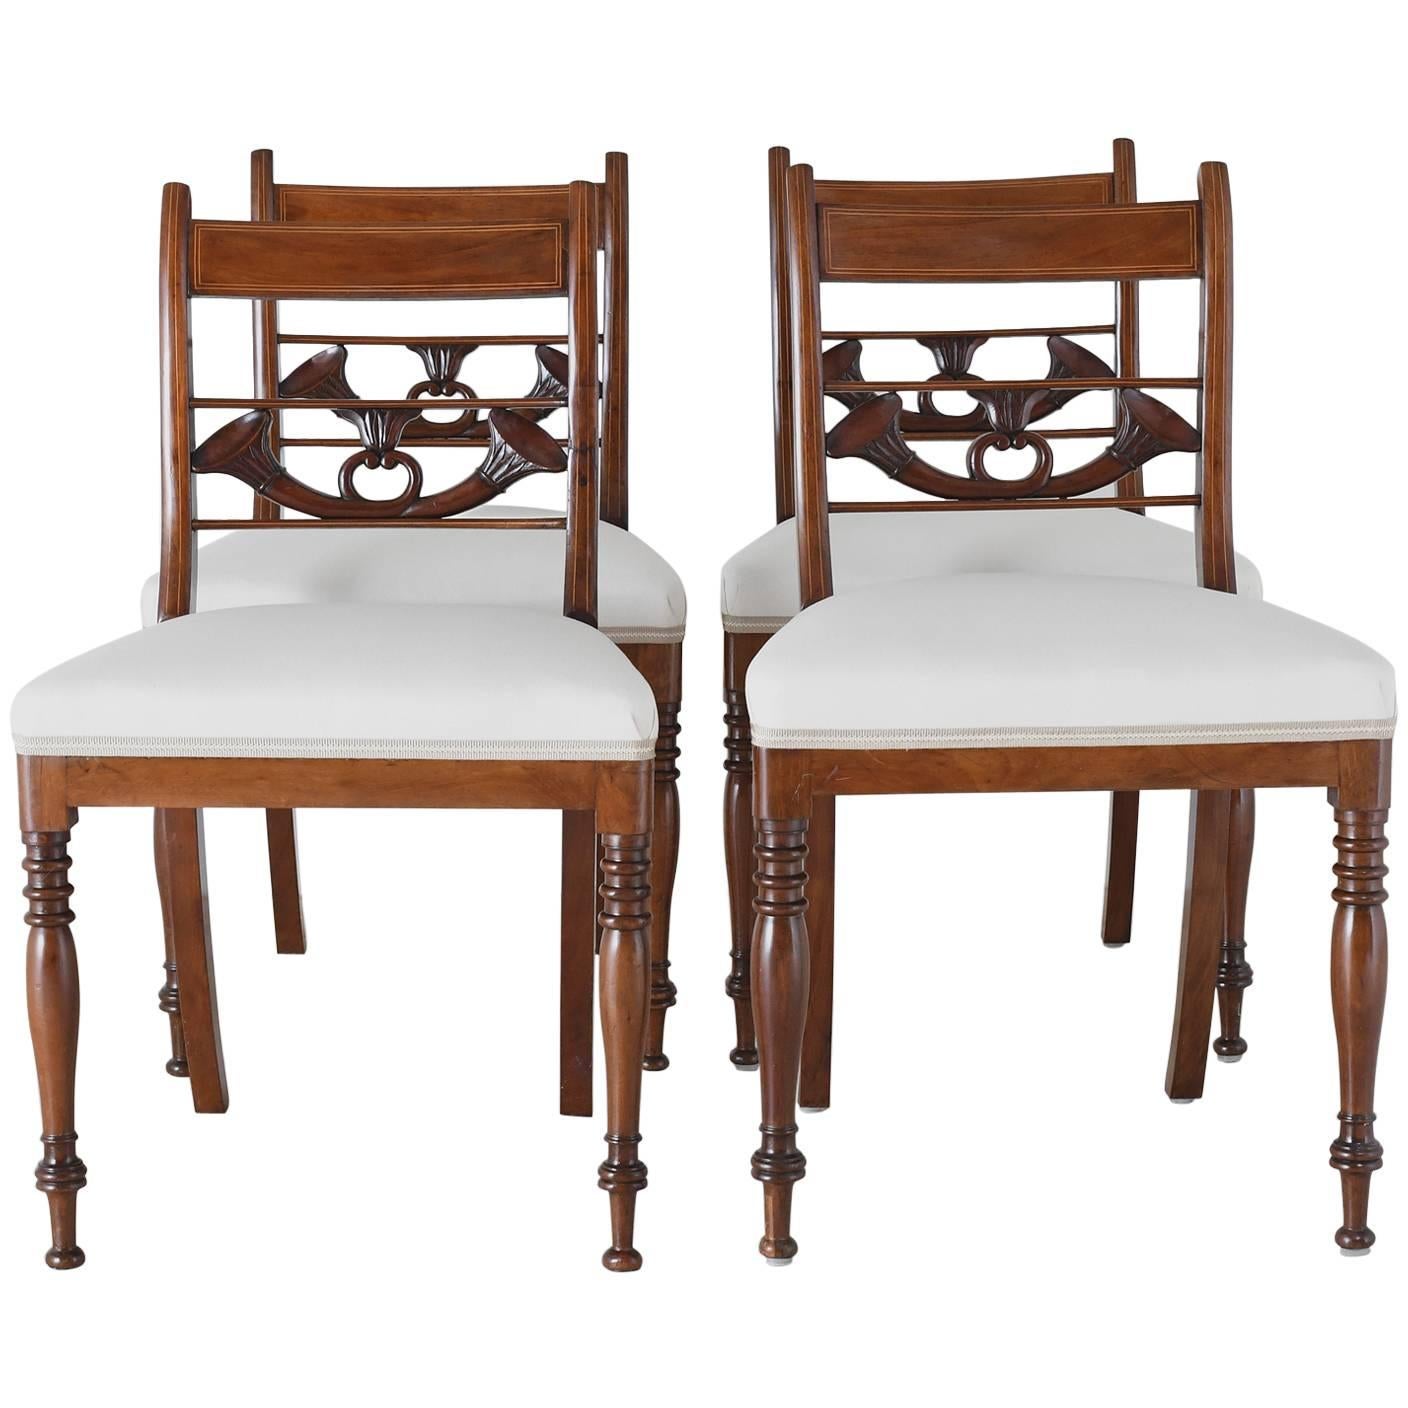 Satz von 4 antiken englischen Regency-Esszimmerstühlen aus Mahagoni mit gepolstertem Sitz